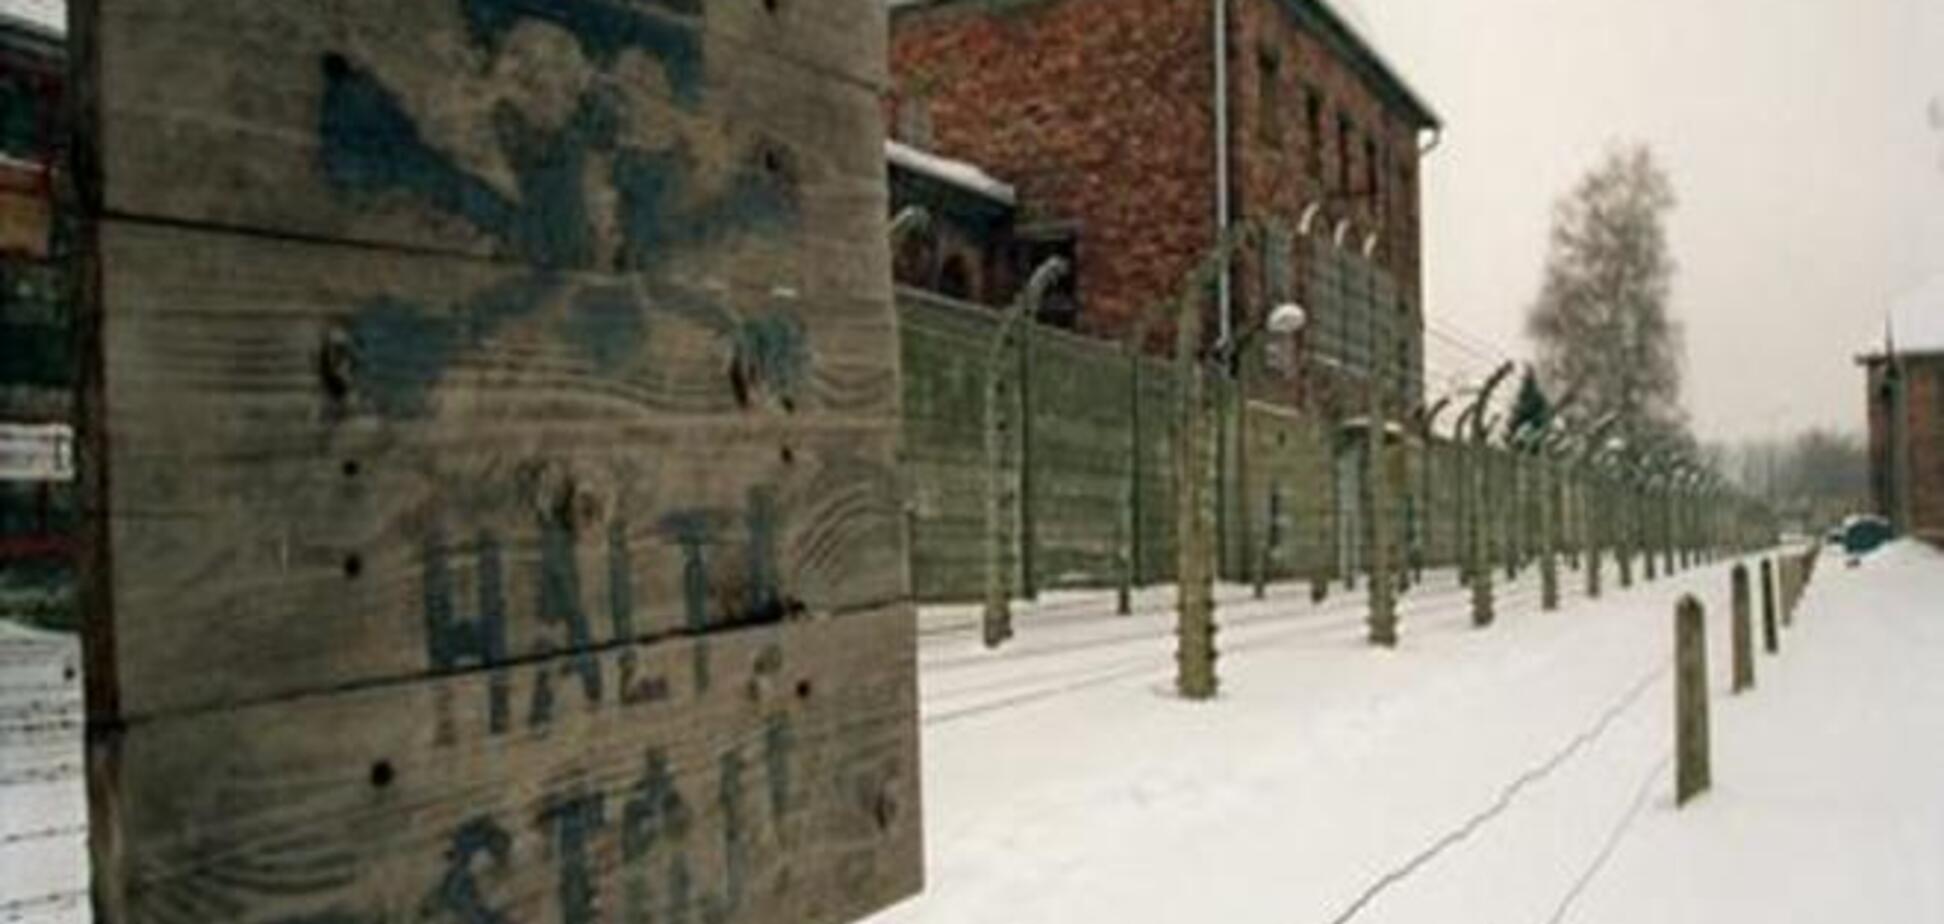 Памятные мероприятия в Освенциме без Путина